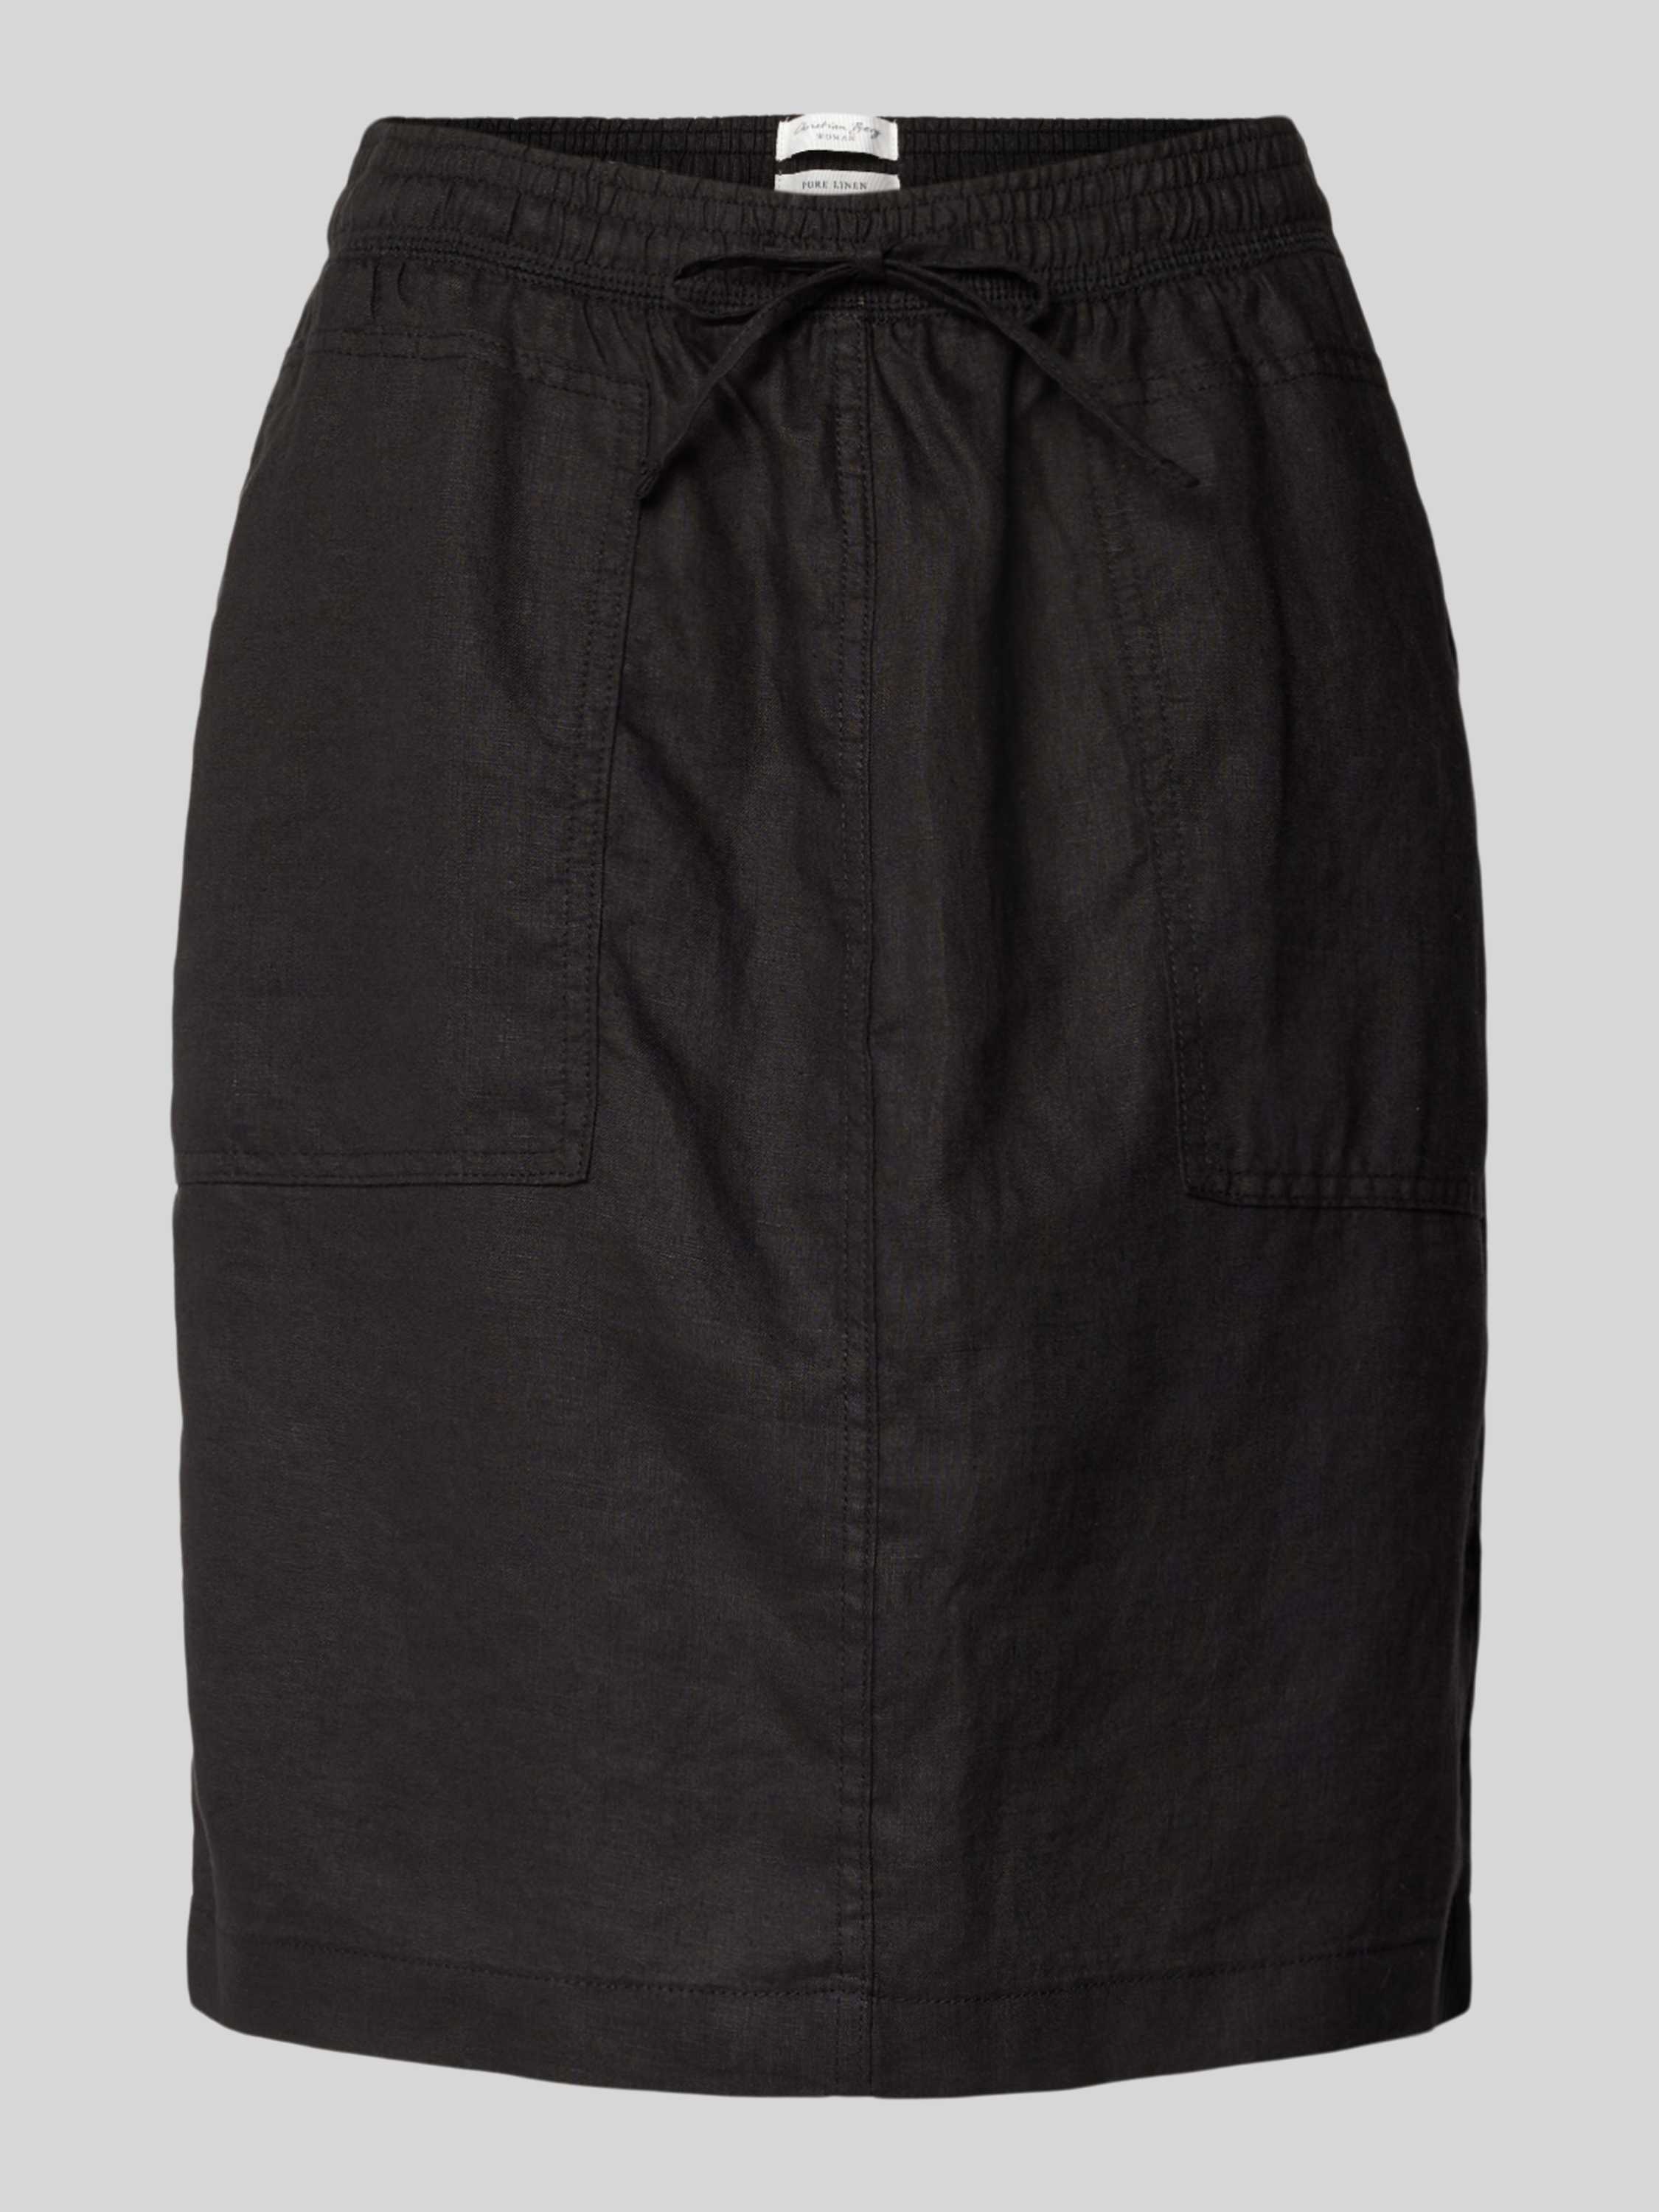 Christian Berg Woman Knielange linnen rok met opgestikte zakken